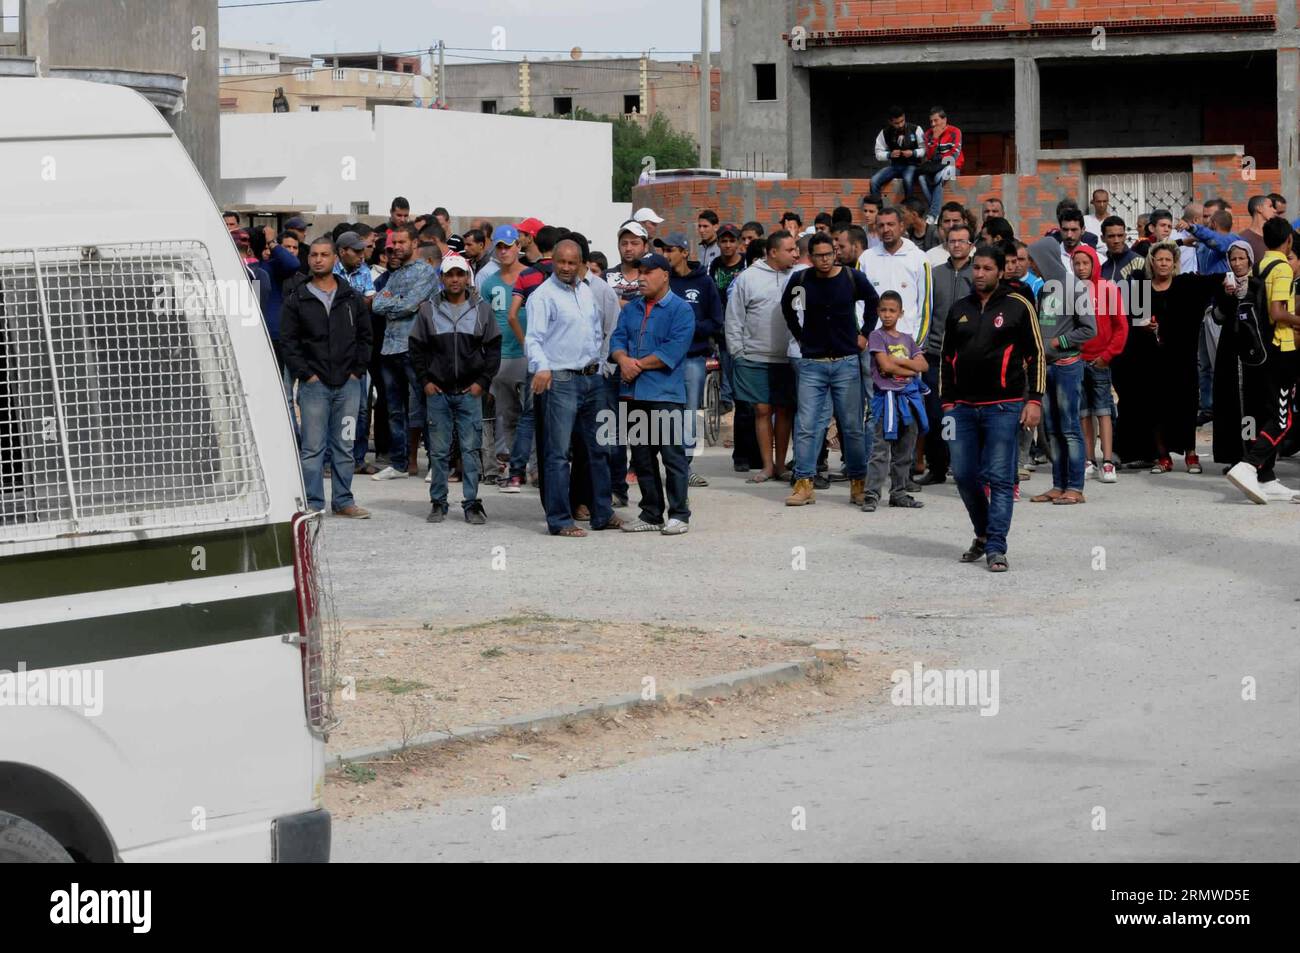 (141023) -- TUNISI, 23 ottobre 2014 -- le persone si riuniscono come addetti alla sicurezza partecipano a un'operazione a Oued Elli di Tunisi, Tunisia, il 23 ottobre 2014. Un poliziotto tunisino è stato ucciso giovedì quando le forze di sicurezza si sono scontrate con i militanti nel sobborgo di Tunisi, mentre il paese si prepara alle elezioni parlamentari. ) TUNISIA-TUNISI-MILITANTI DELL'OPERAZIONE DI SICUREZZA Adel PUBLICATIONxNOTxINxCHN Tunisi OCT 23 2014 celebrità si riuniscono mentre la sicurezza partecipa all'operazione Oued Elli di Tunisi in Tunisia IL 23 ottobre 2014 un poliziotto tunisino che HA UCCISO giovedì quando le forze di sicurezza si sono scontrate con militanti Foto Stock